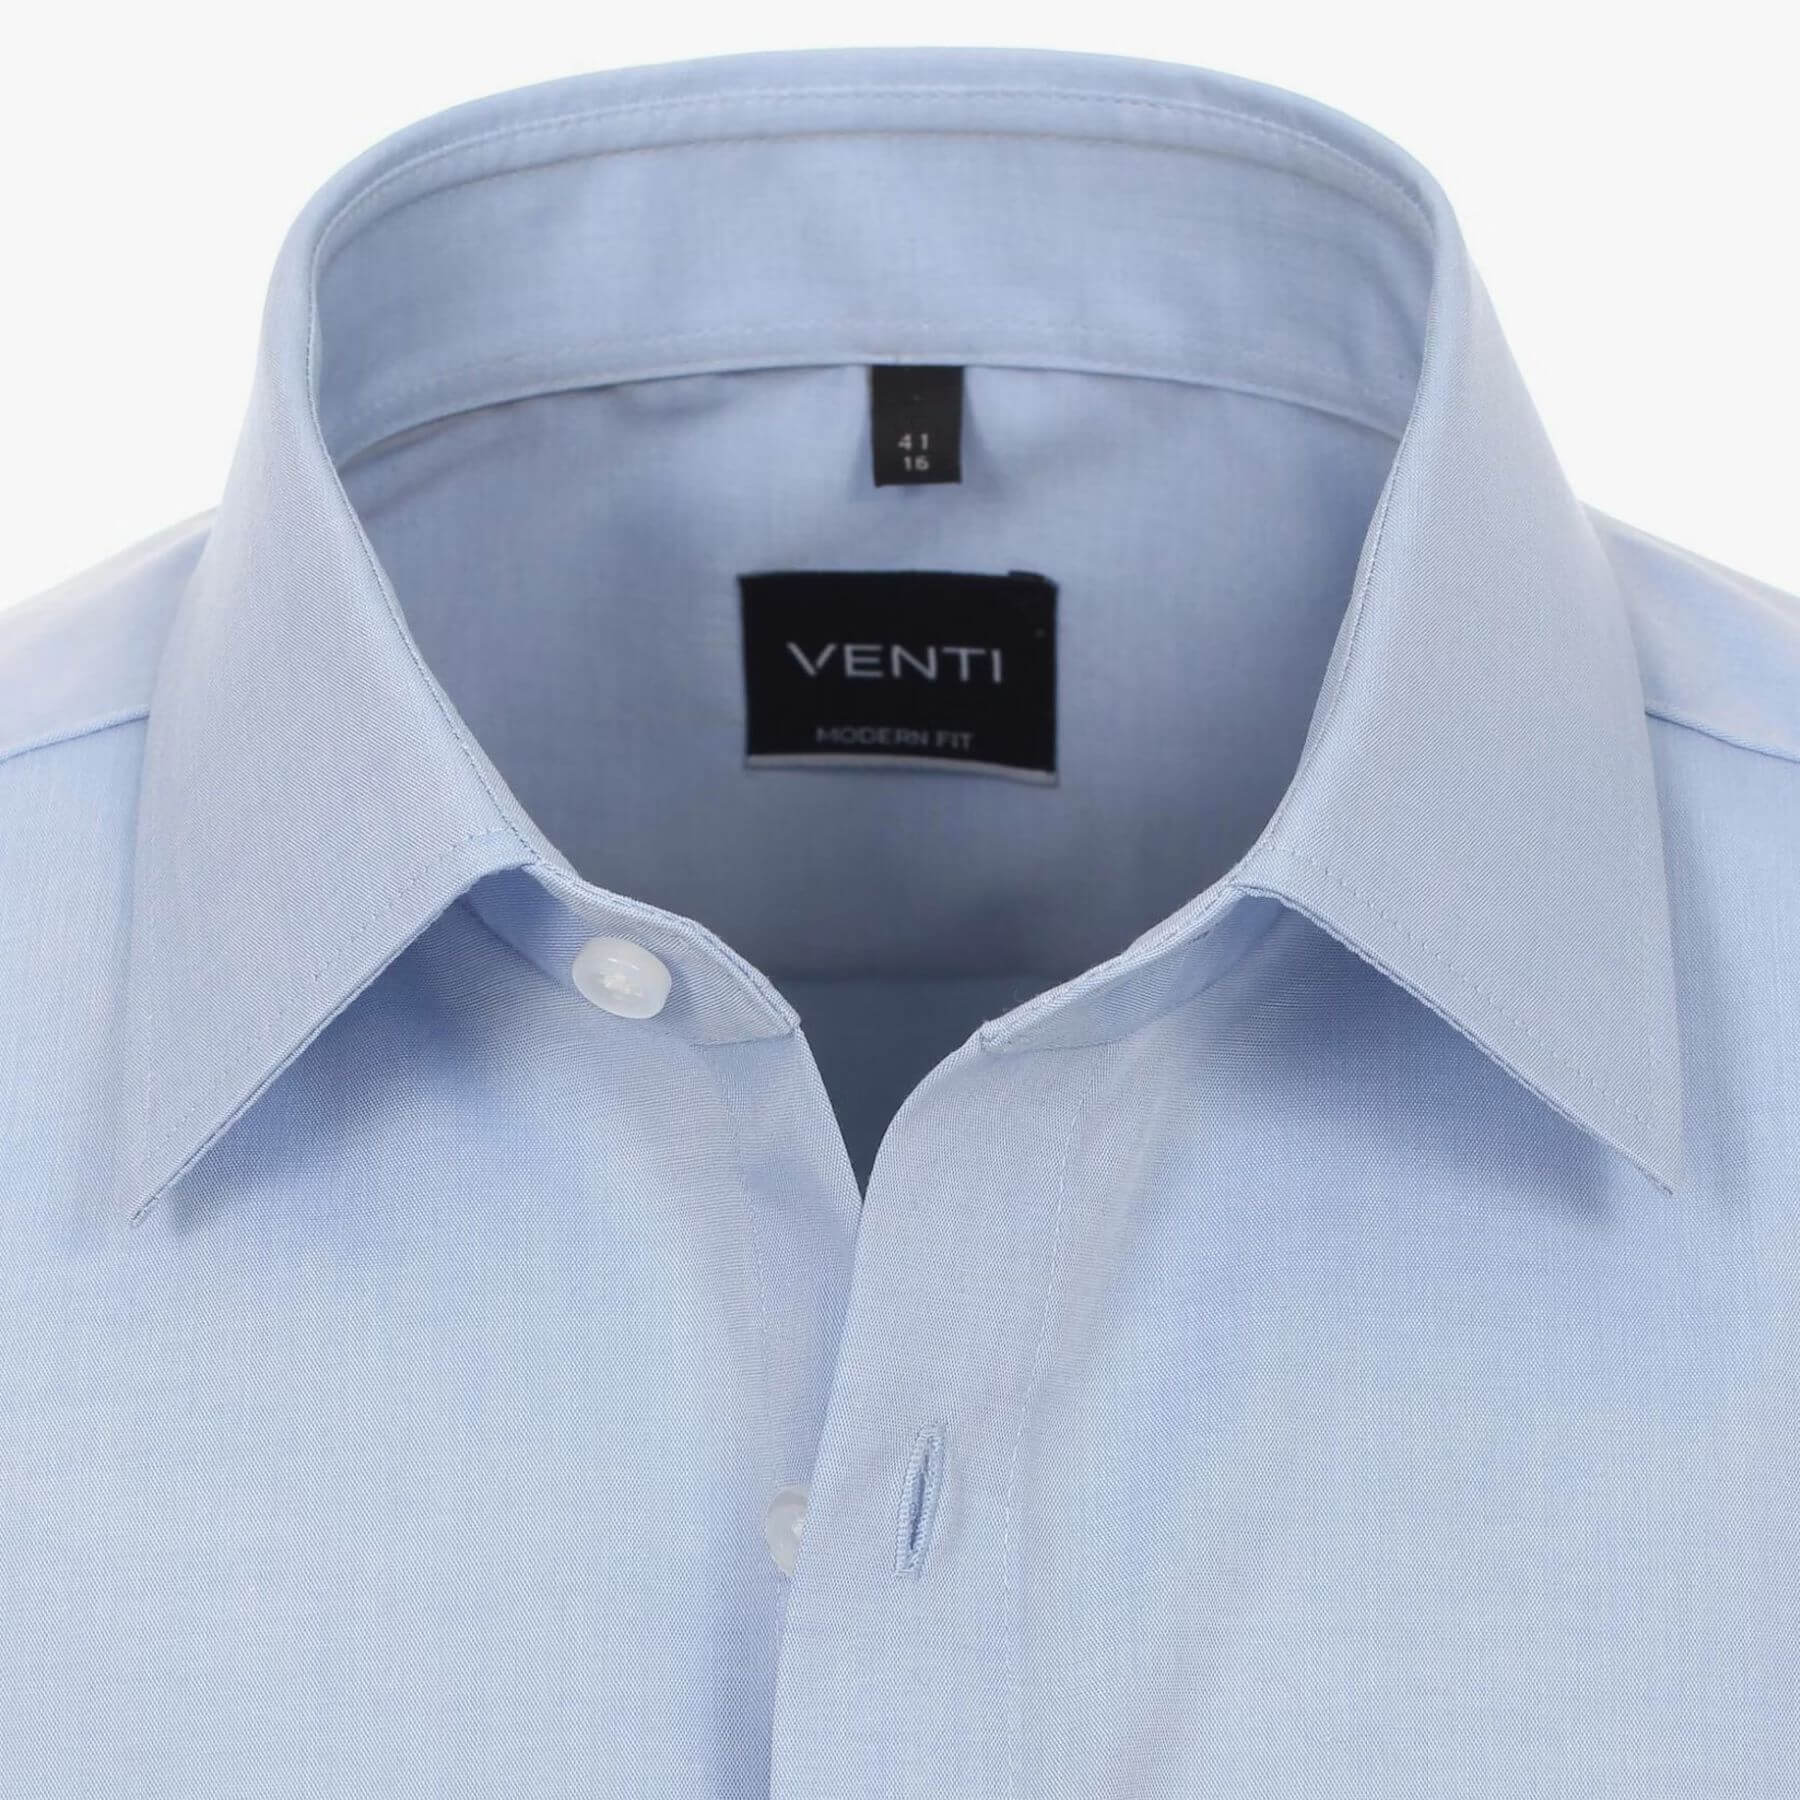 Сорочка мужская Venti Modern Fit 001620-115 голубая классическая, короткий рукав